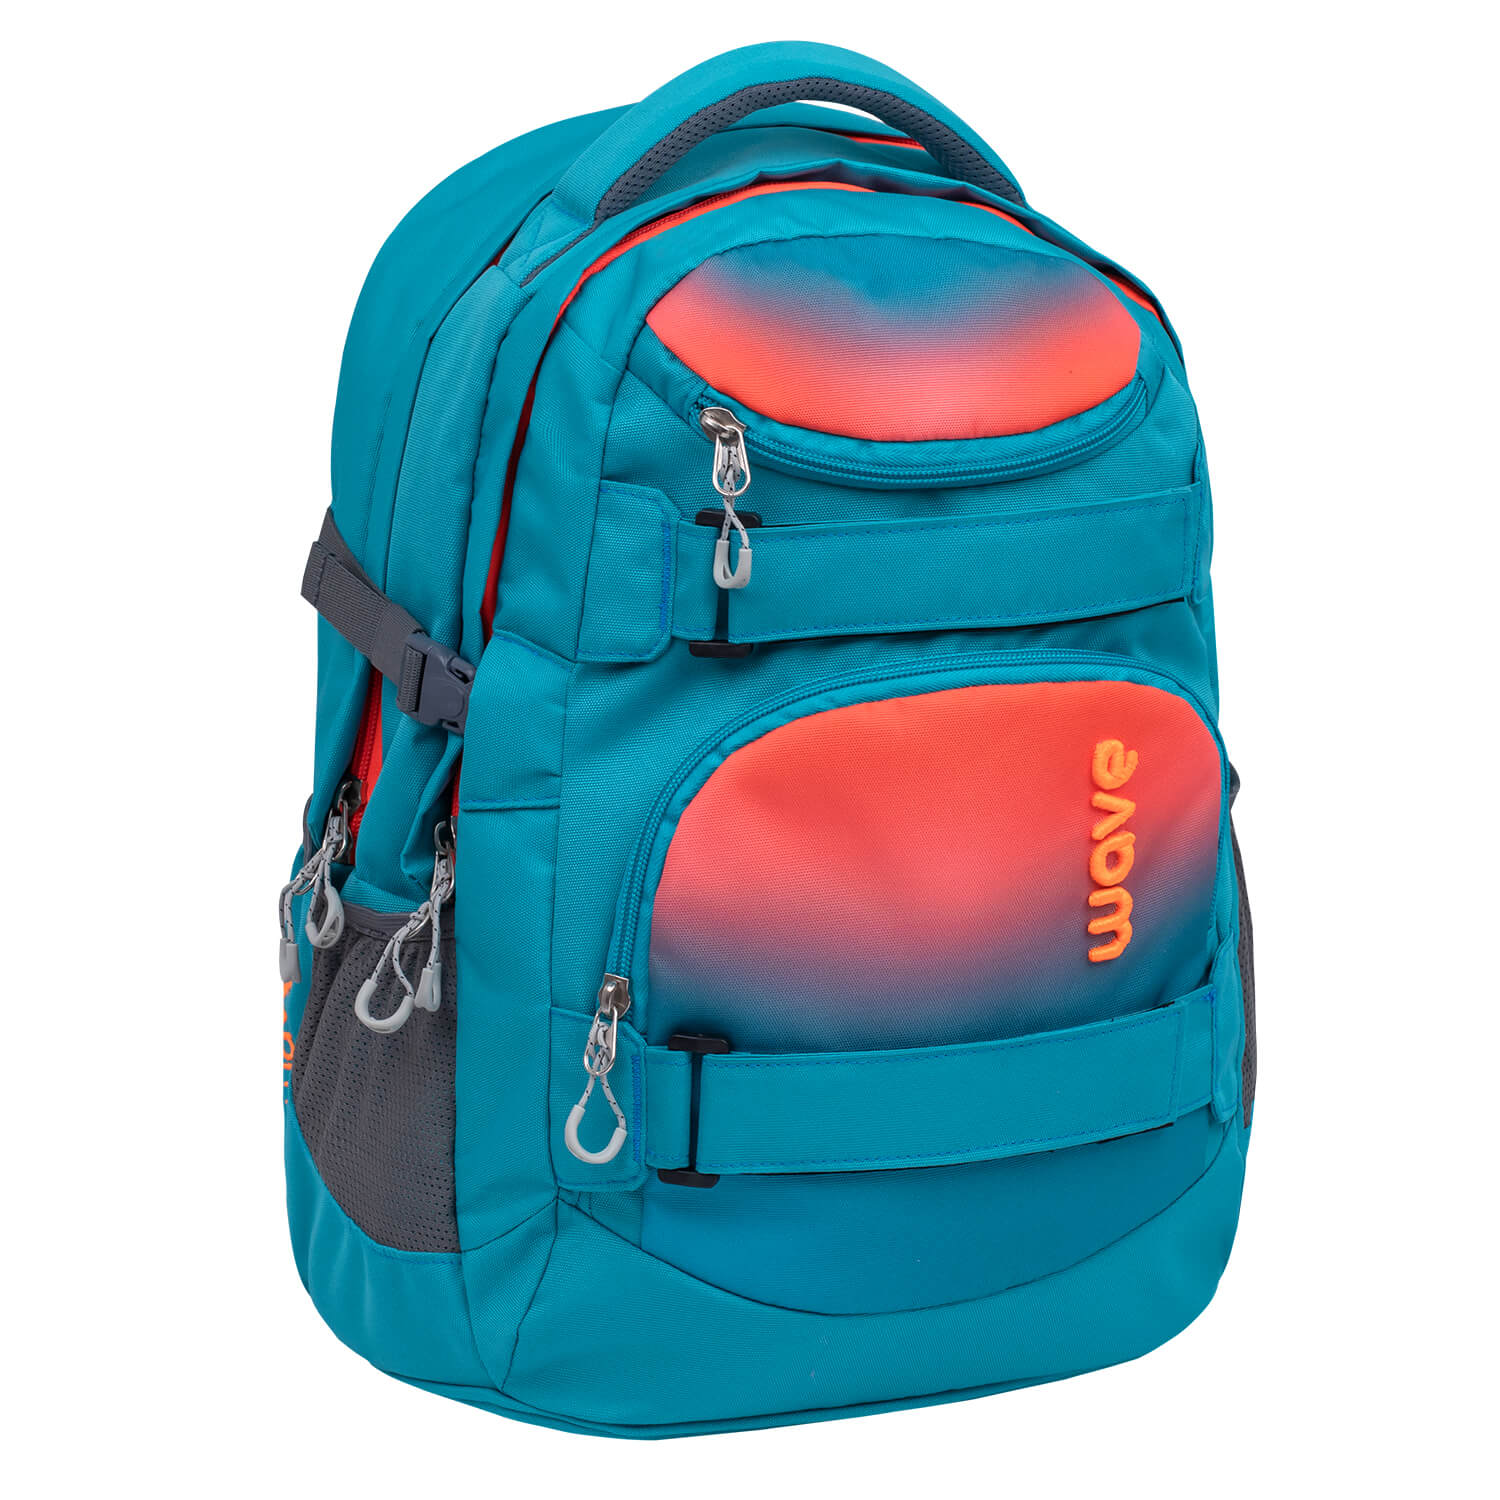 Wave Infinity Ombre Neon Orange And Bluebird school backpack